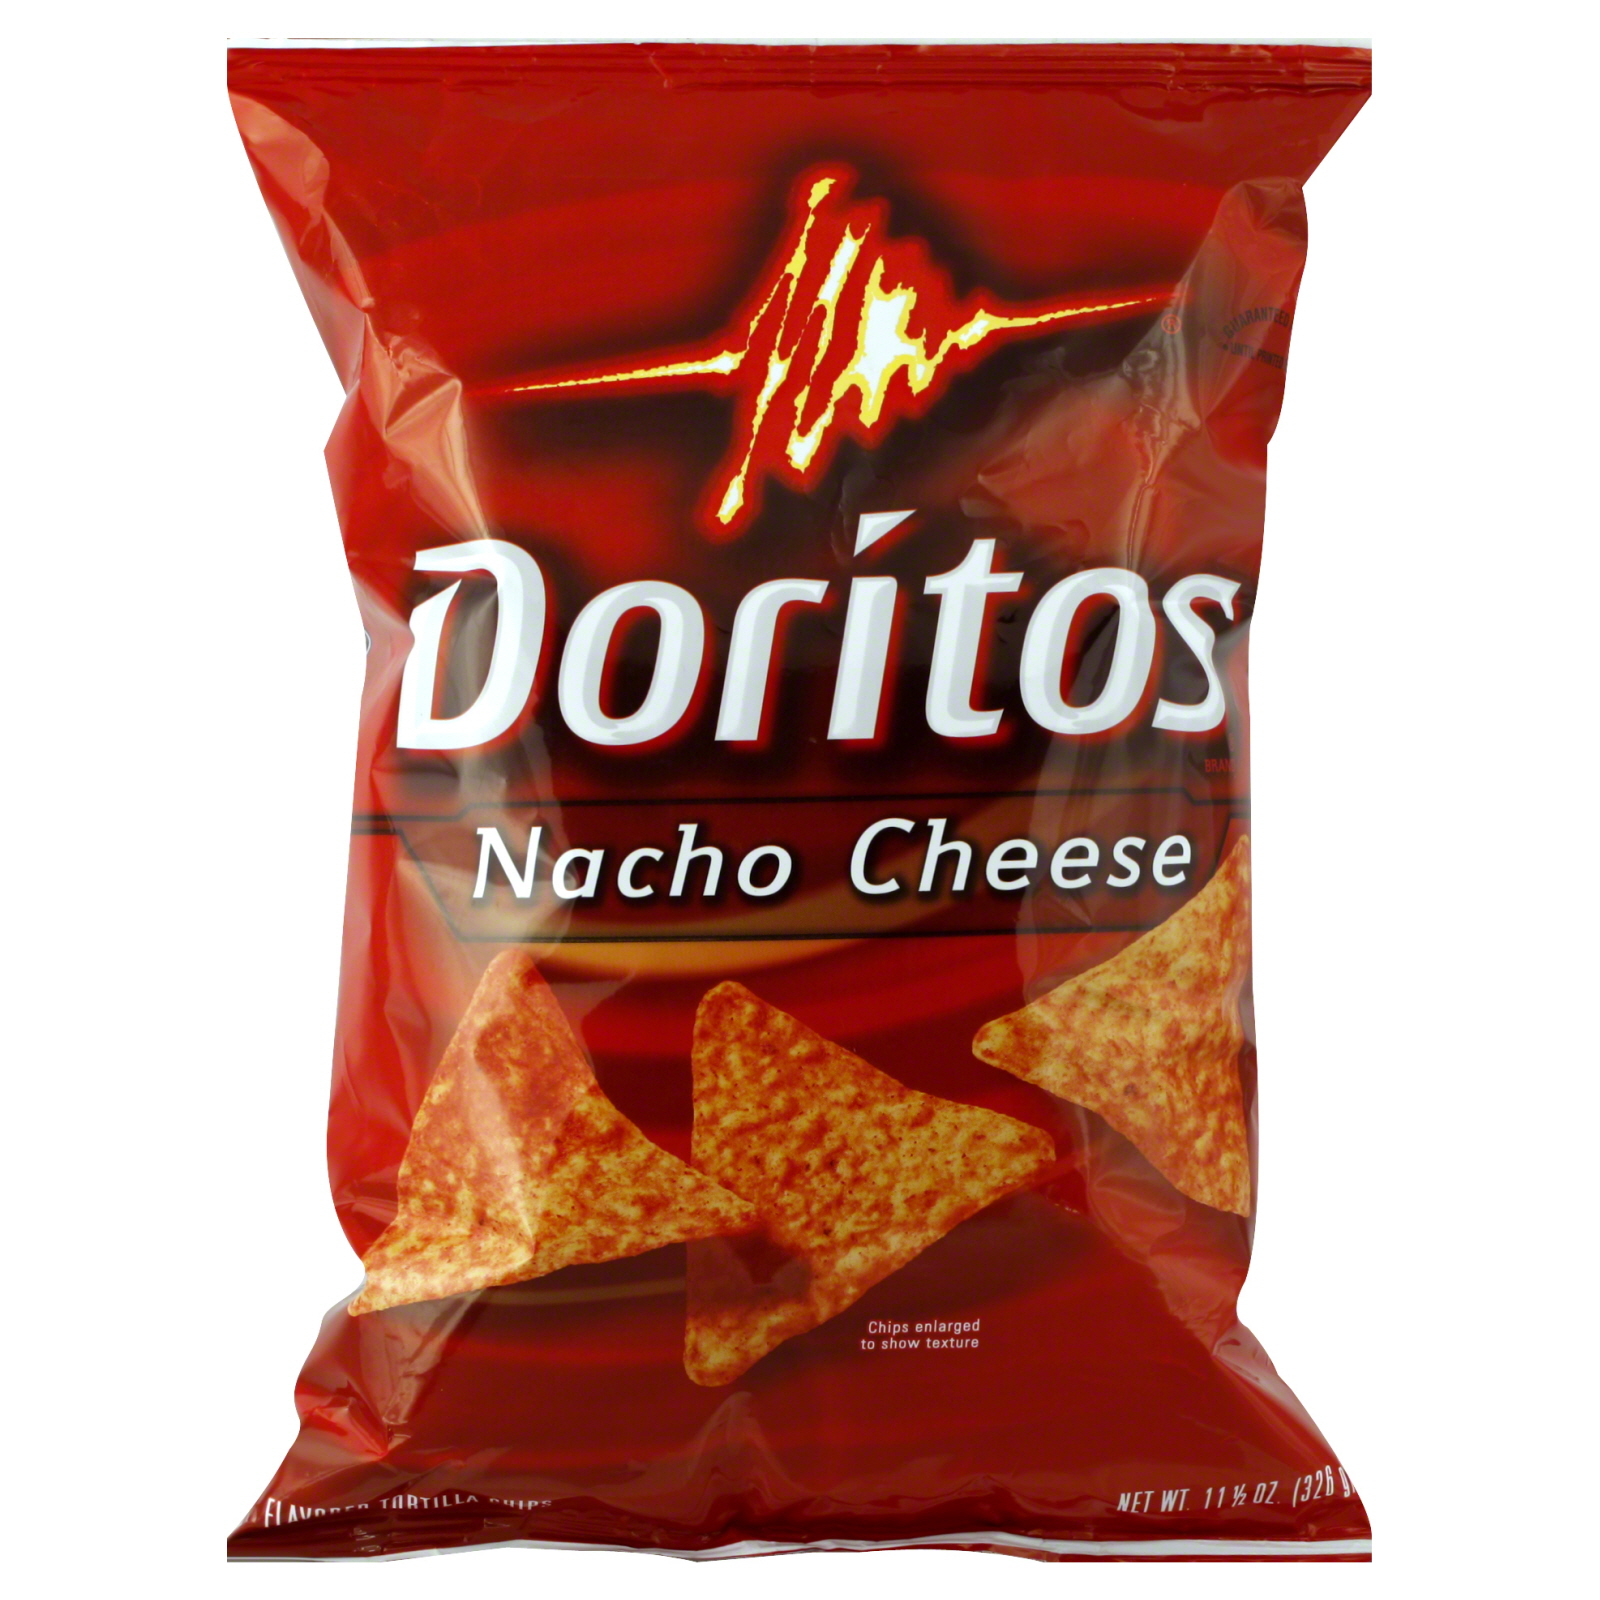 Doritos Tortilla Chips, Nacho Cheese 11.5 oz (326 g)